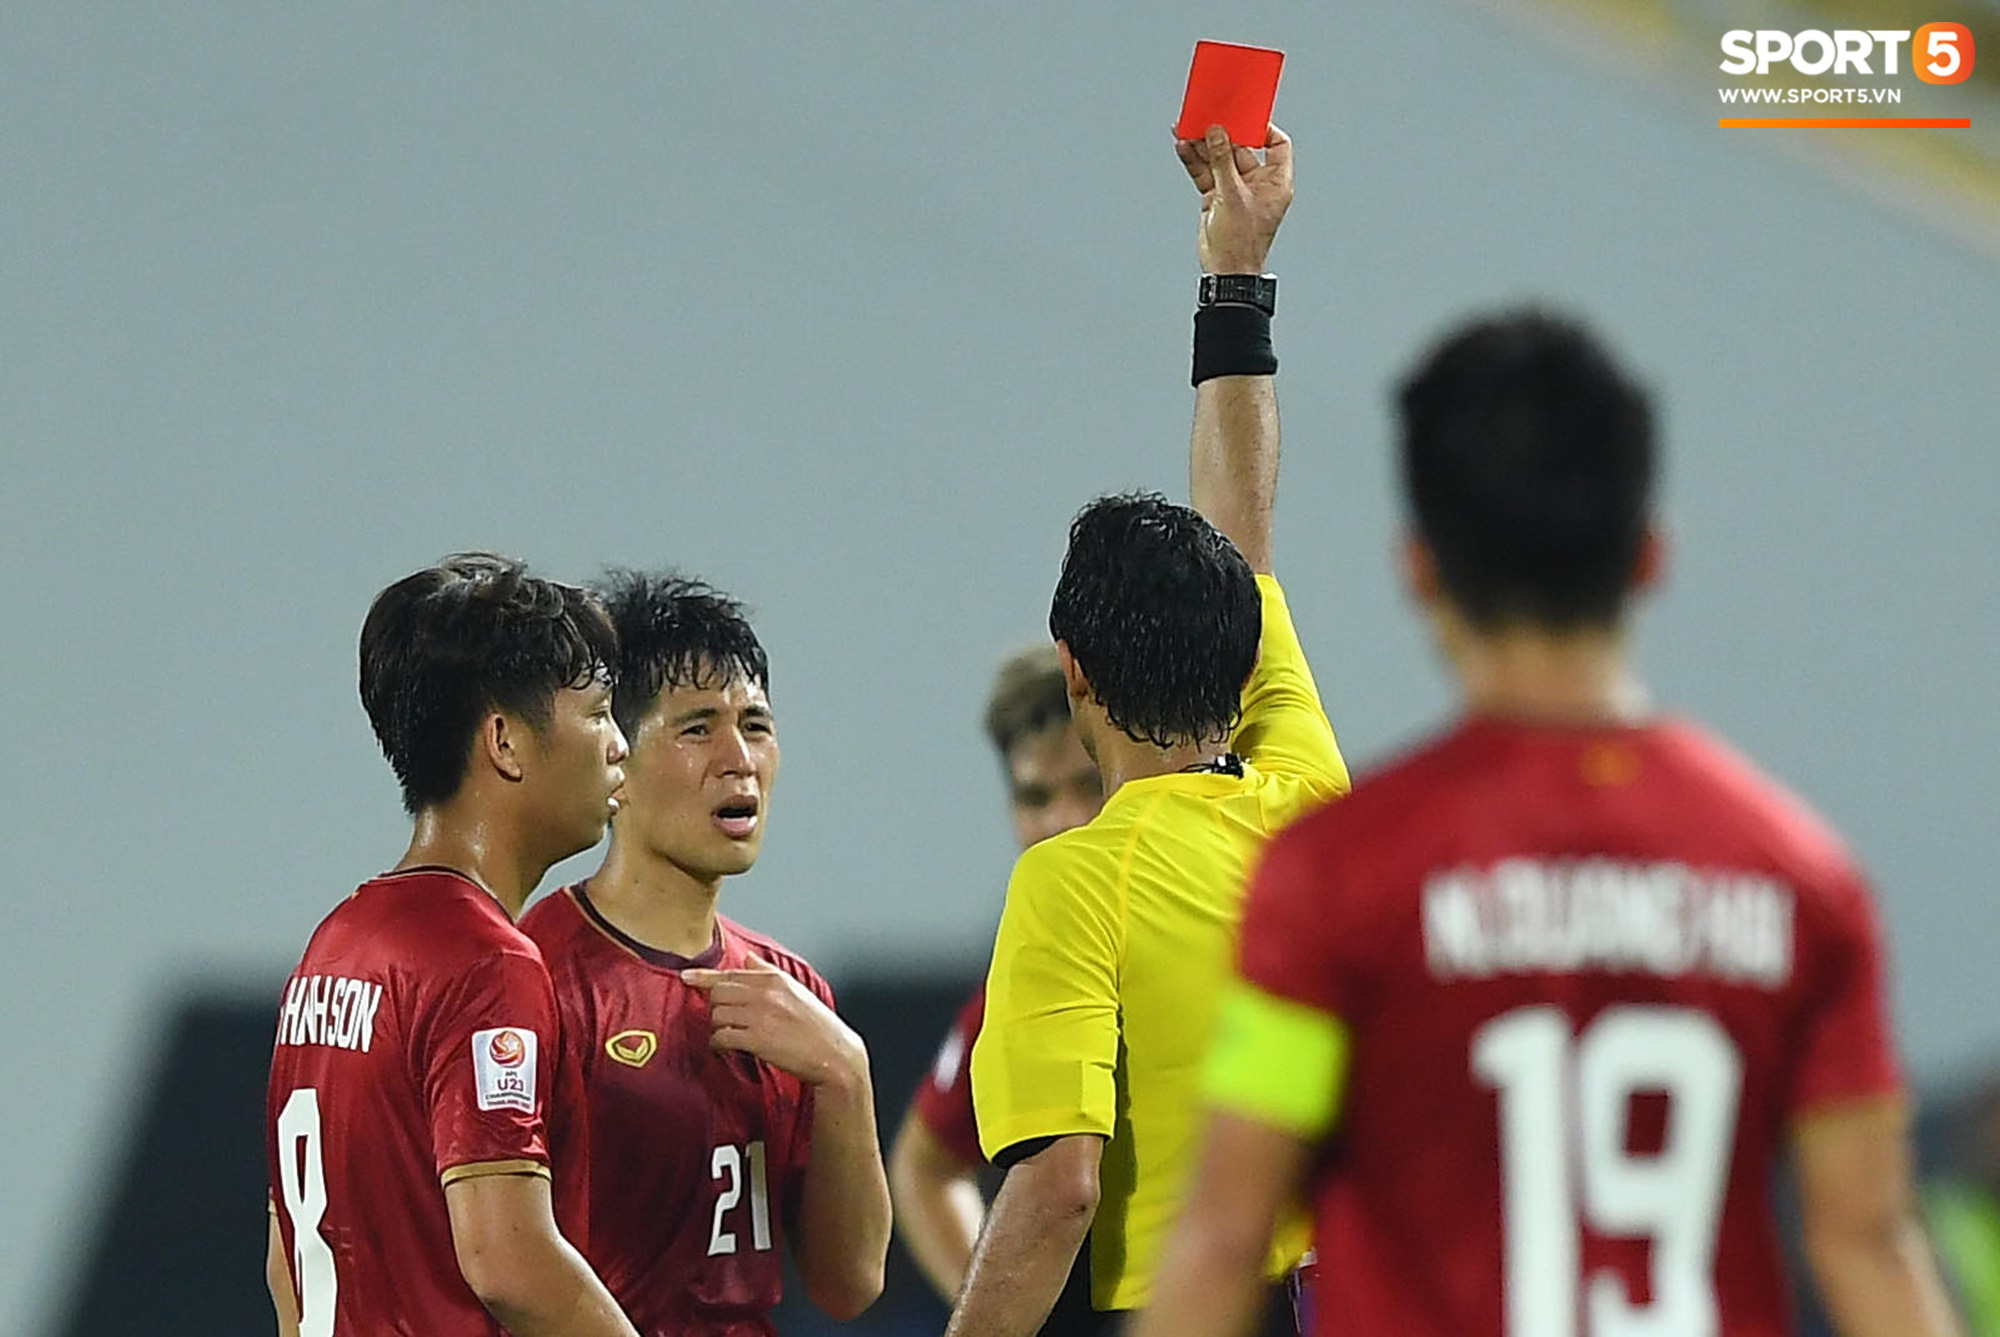 Khoảnh khắc đáng buồn nhất VCK U23 châu Á 2020: Đình Trọng nhận thẻ đỏ, U23 Việt Nam mất hết sau trận đấu với CHDCND Triều Tiến - Ảnh 1.